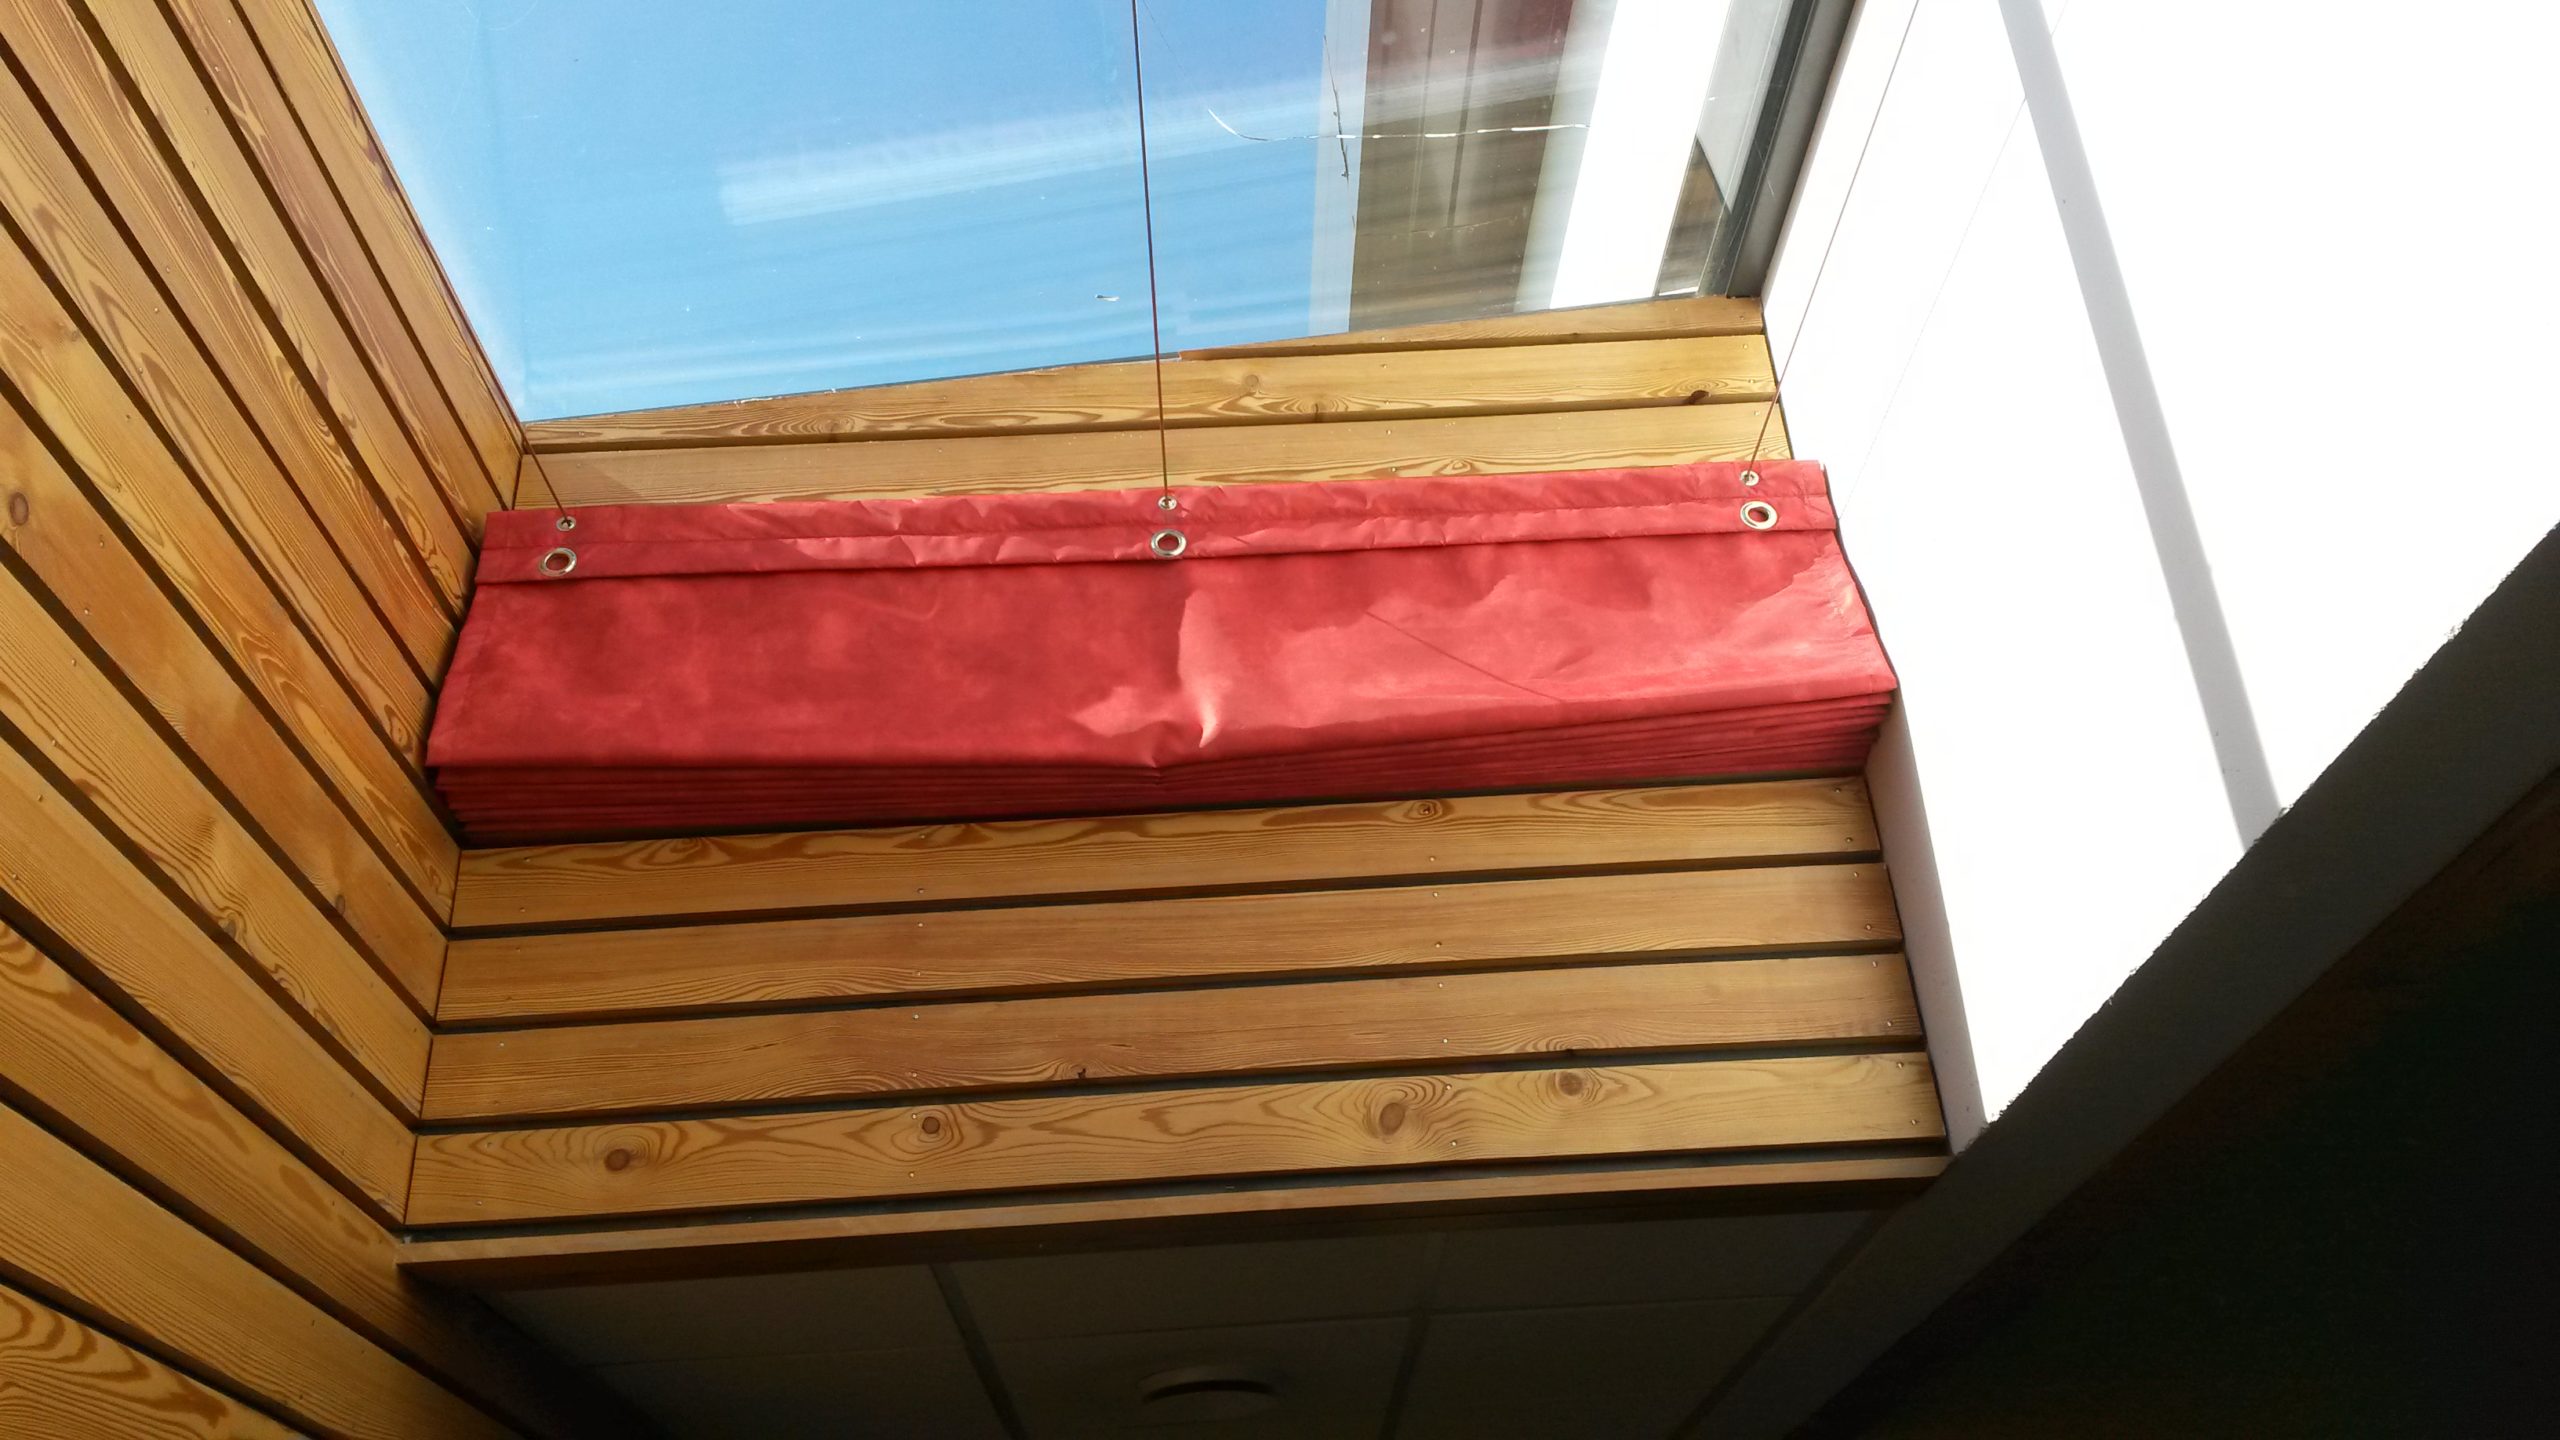 Conception d'un rideau sur câble pour une fenêtre de toit